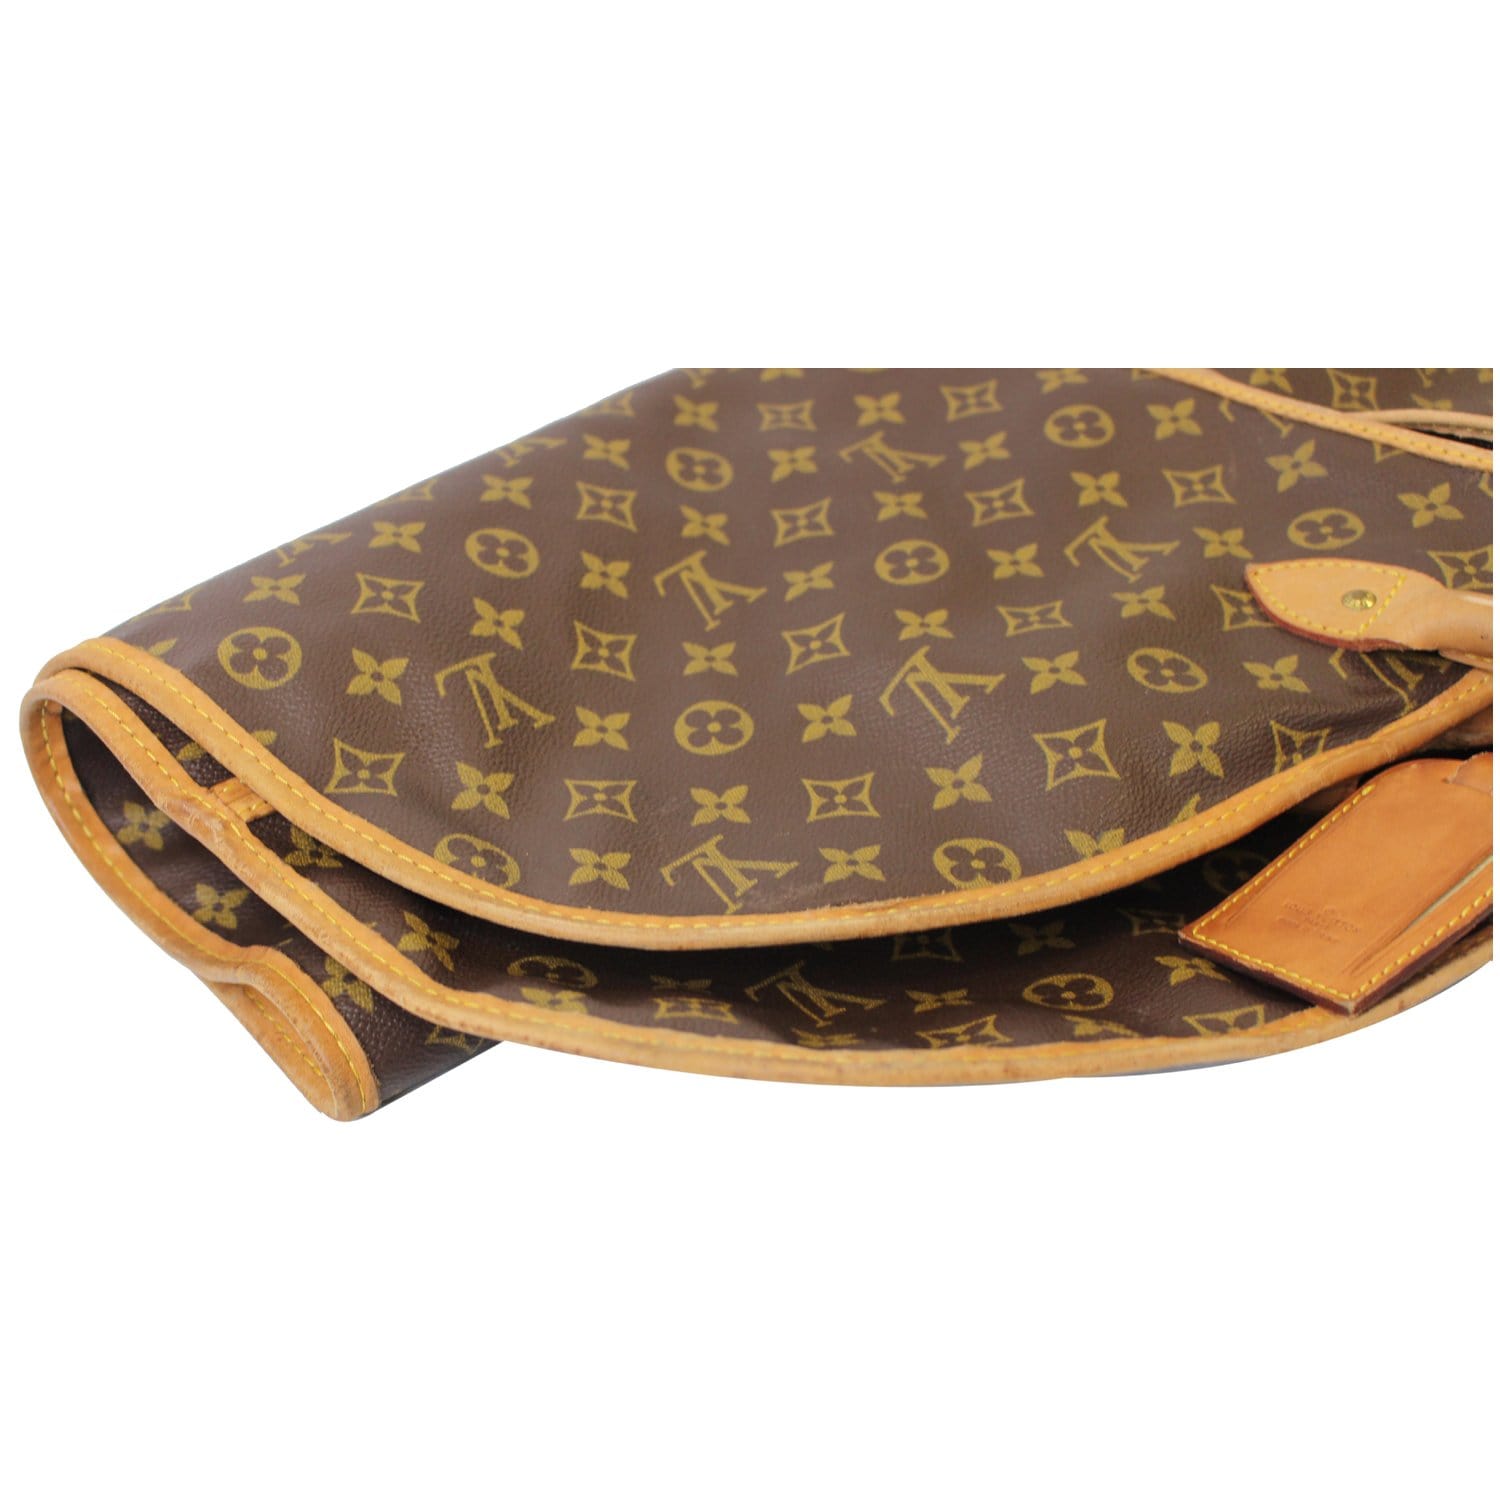 Garment cloth travel bag Louis Vuitton Brown in Cloth - 32508711